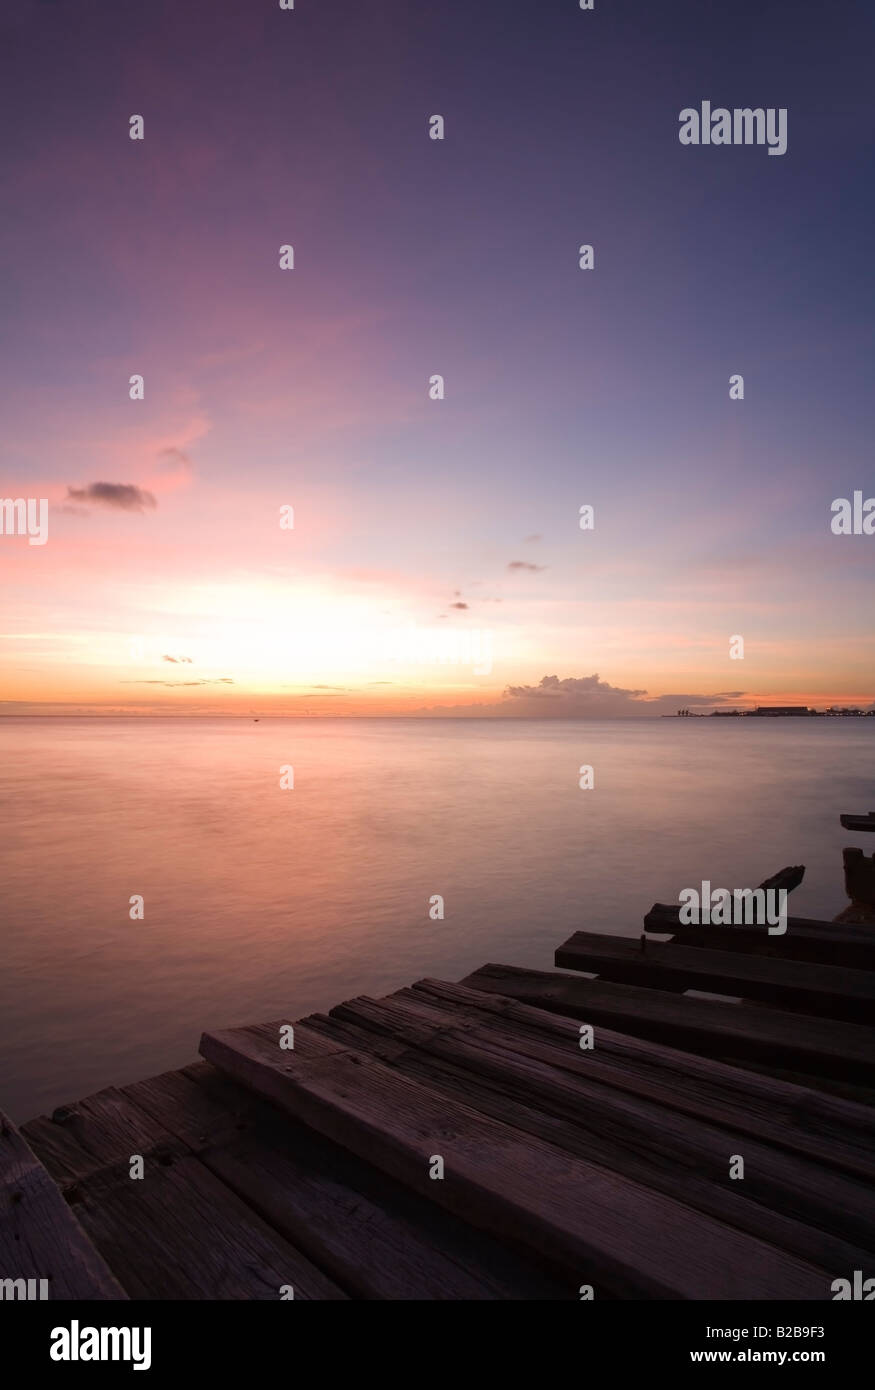 Caraibi bellissimo tramonto dalla banchina in legno a San Michele, Barbados Foto Stock